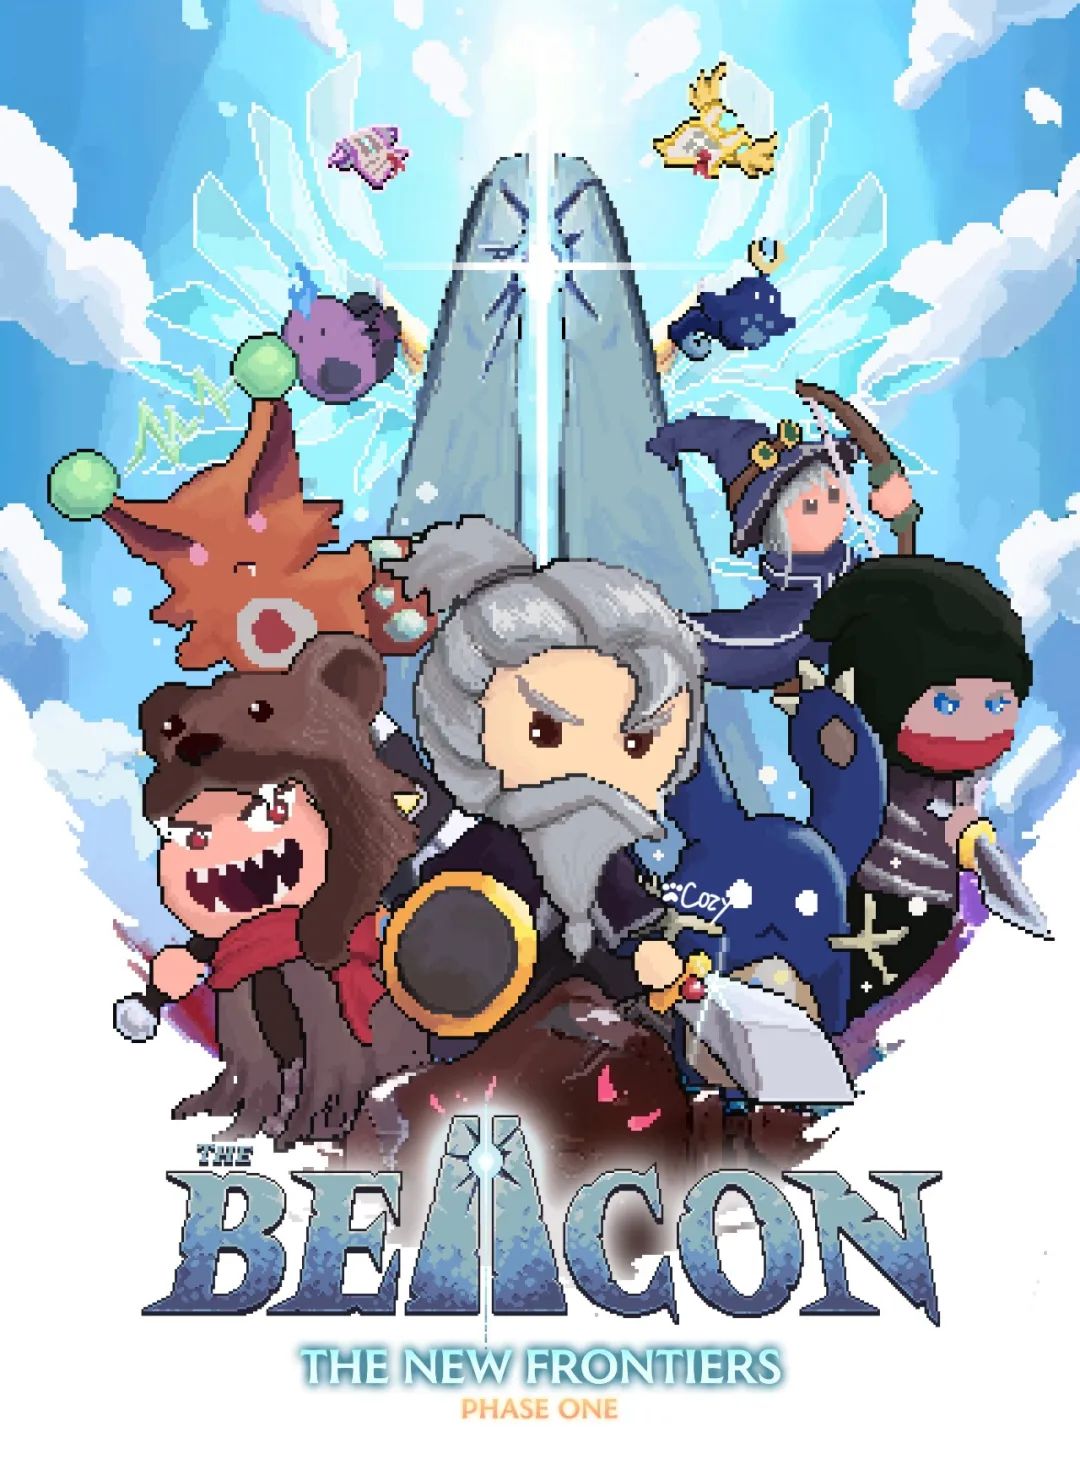 前期空投15万枚Arb的游戏平台The Beacon正在发射，感兴趣的小伙伴看过来，完全0撸！